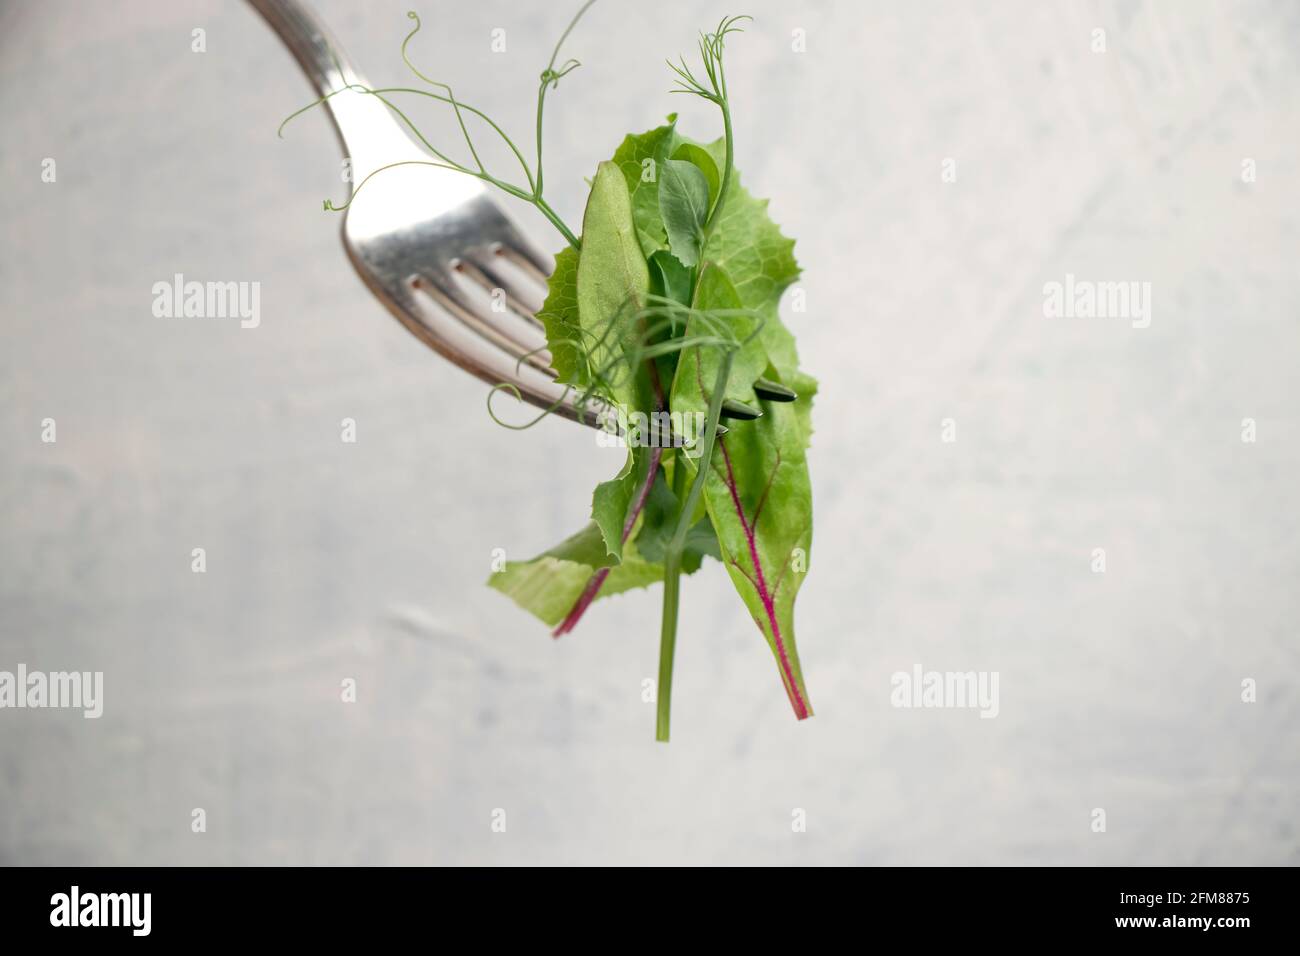 Gabel mit verschiedenen Salatsorten auf weißem Strukturtisch. Junge saftige Sprossen aus Erbsen oder Bohnen, Rübensprossen und grünem Salat. Gesundes Lebensmittelkonzept. Stockfoto